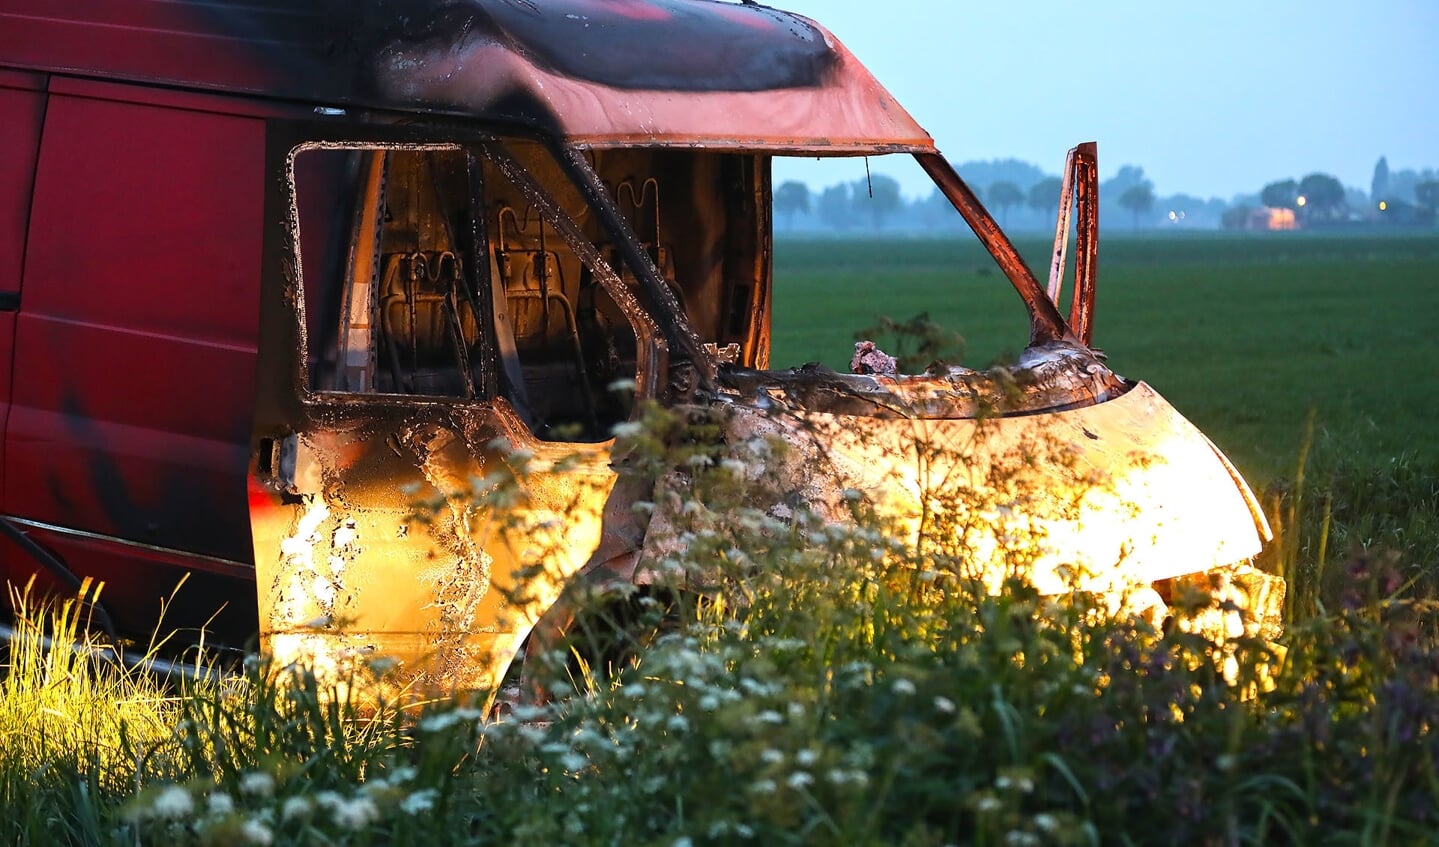 Politie doet onderzoek na aantreffen van uitgebrande bestelbus in Lithoijen. (Foto: Gabor Heeres / Foto Mallo)